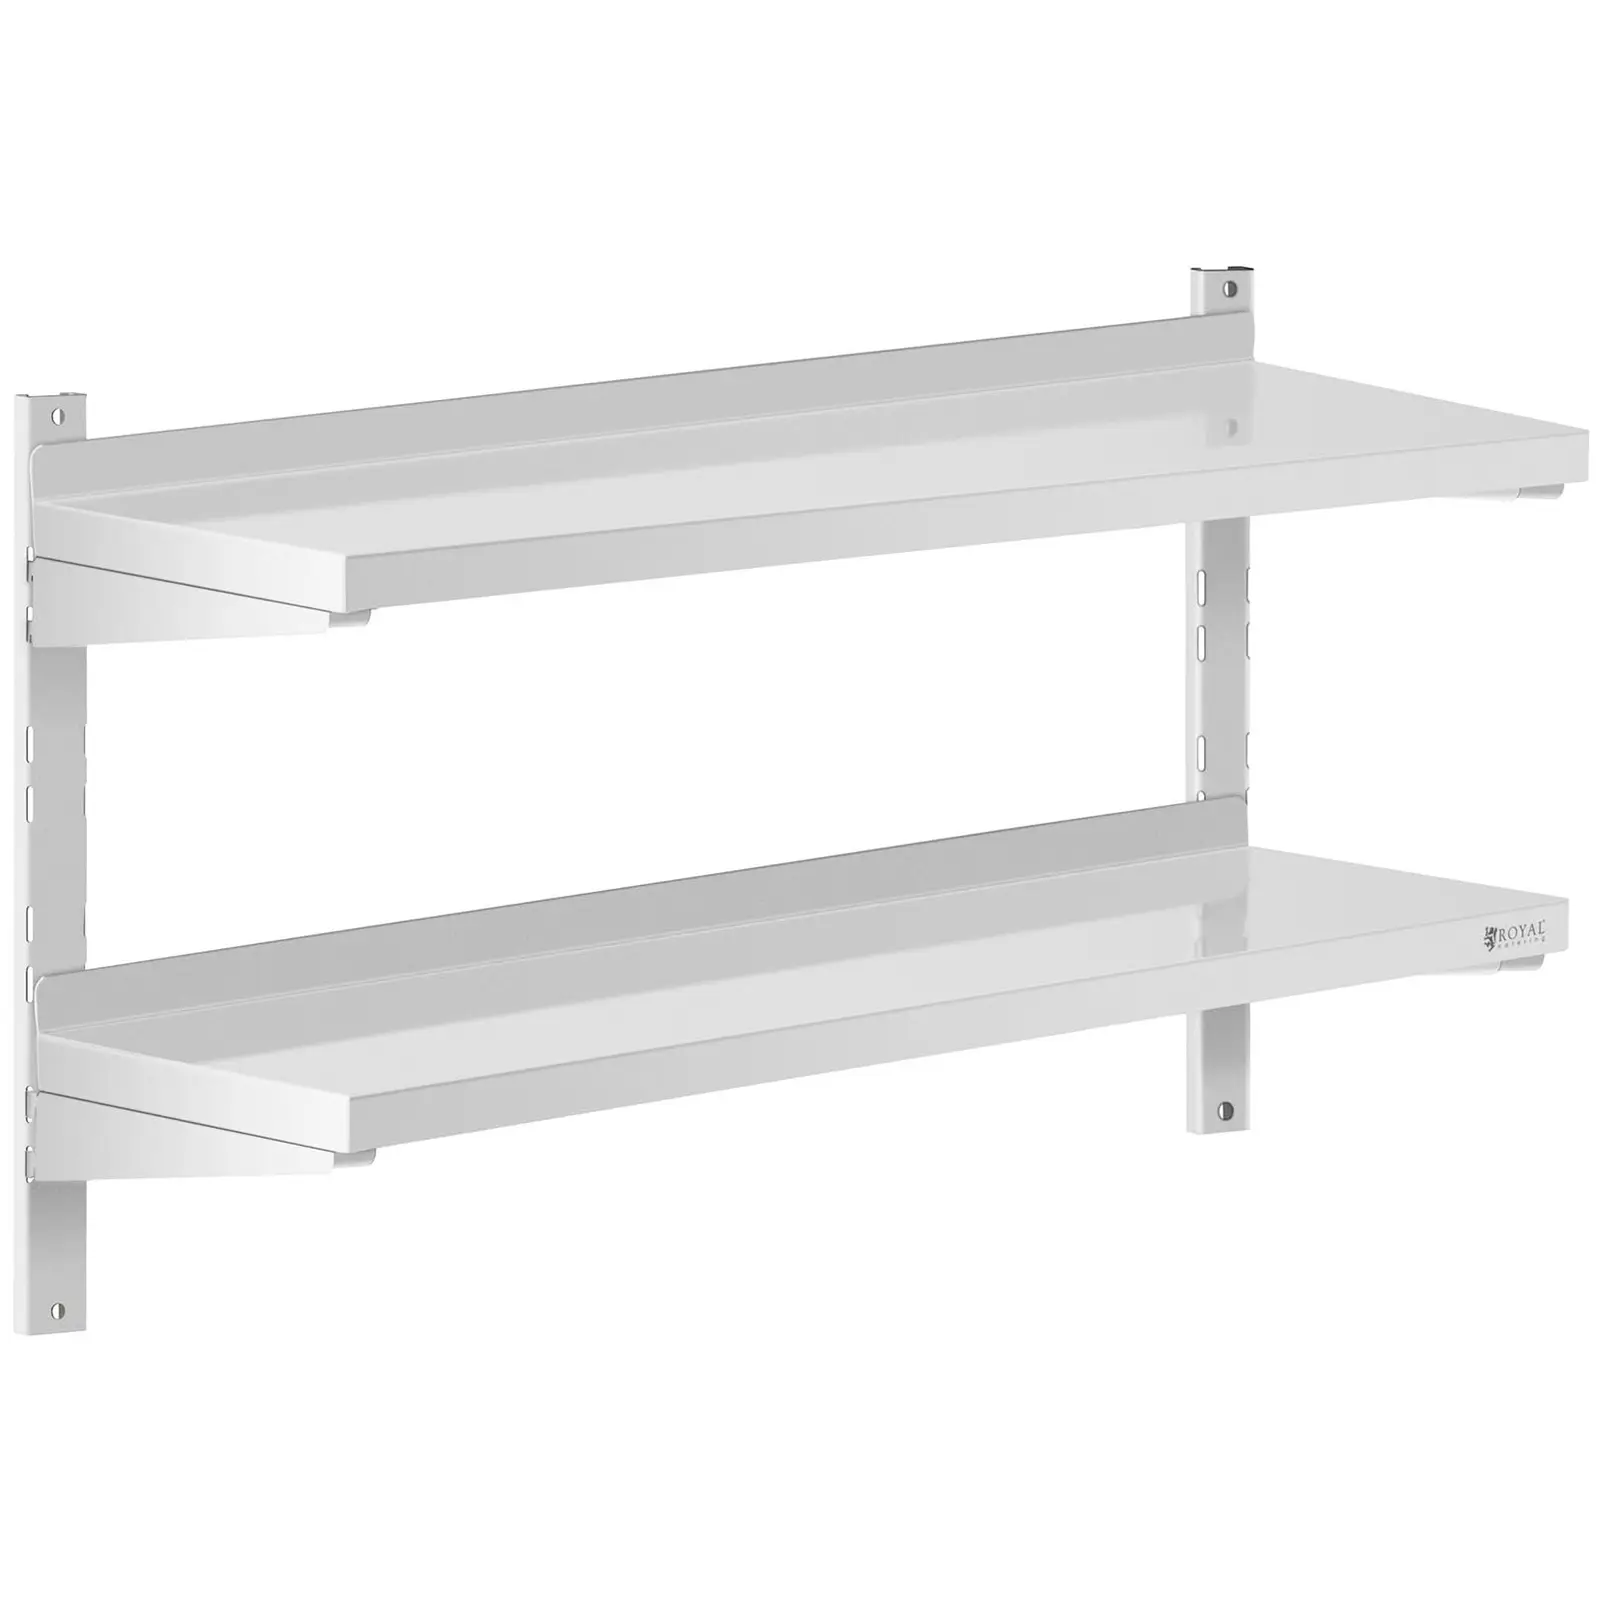 Stainless Steel Wall Shelf - 2 shelves - 30 x 100 cm